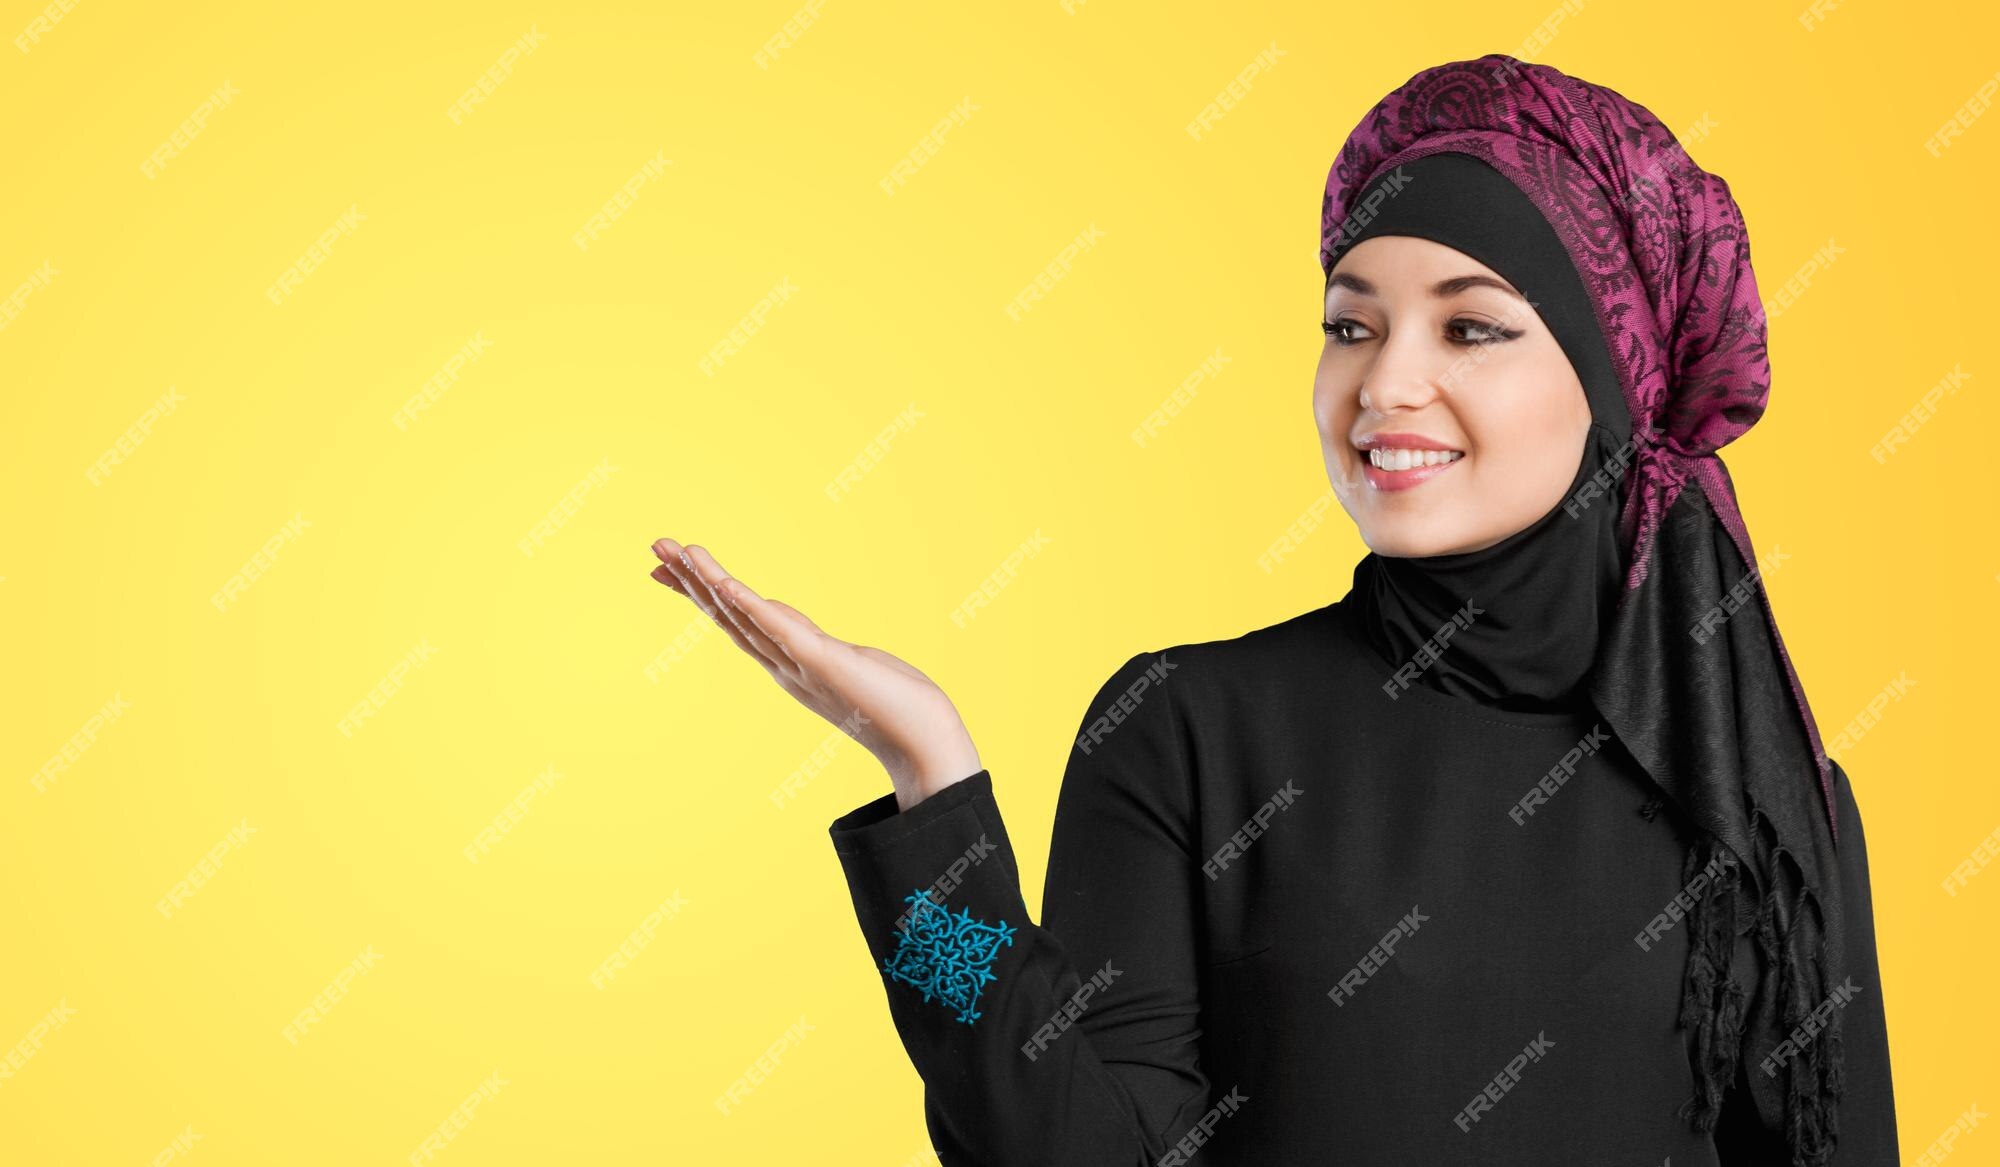 Entender mal Reprimir impulso Foto de estudio de una mujer joven con ropa árabe tradicional. ella está  sosteniendo su mano a un lado | Foto Premium